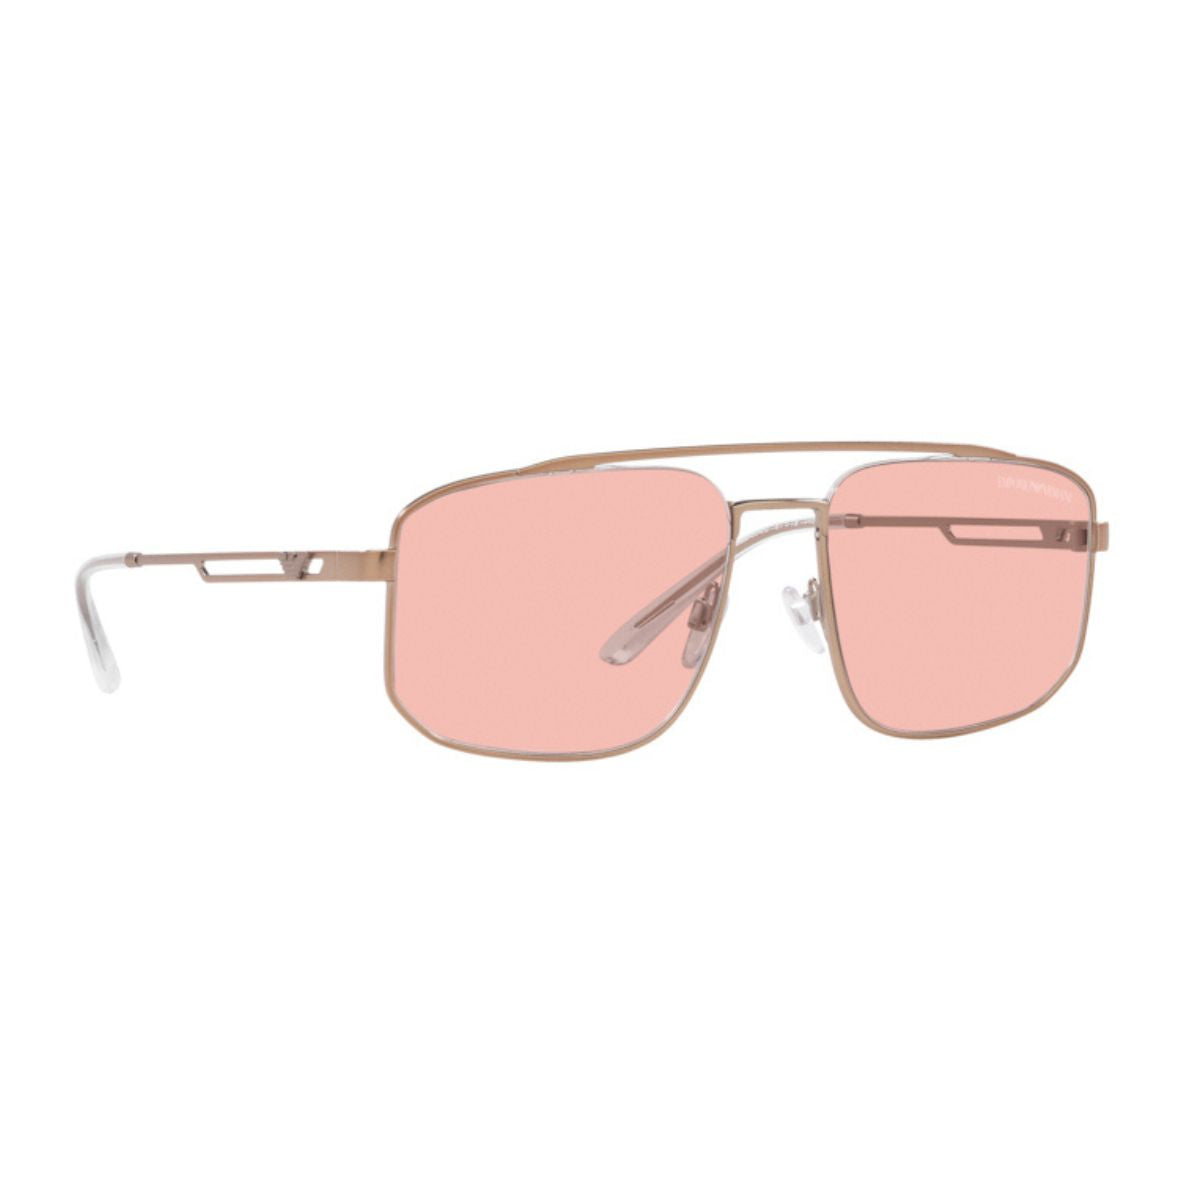 Emporio Armani EA 2139 3004/5 UV Protection Rectangle Sunglasses For Men's At Optorium"